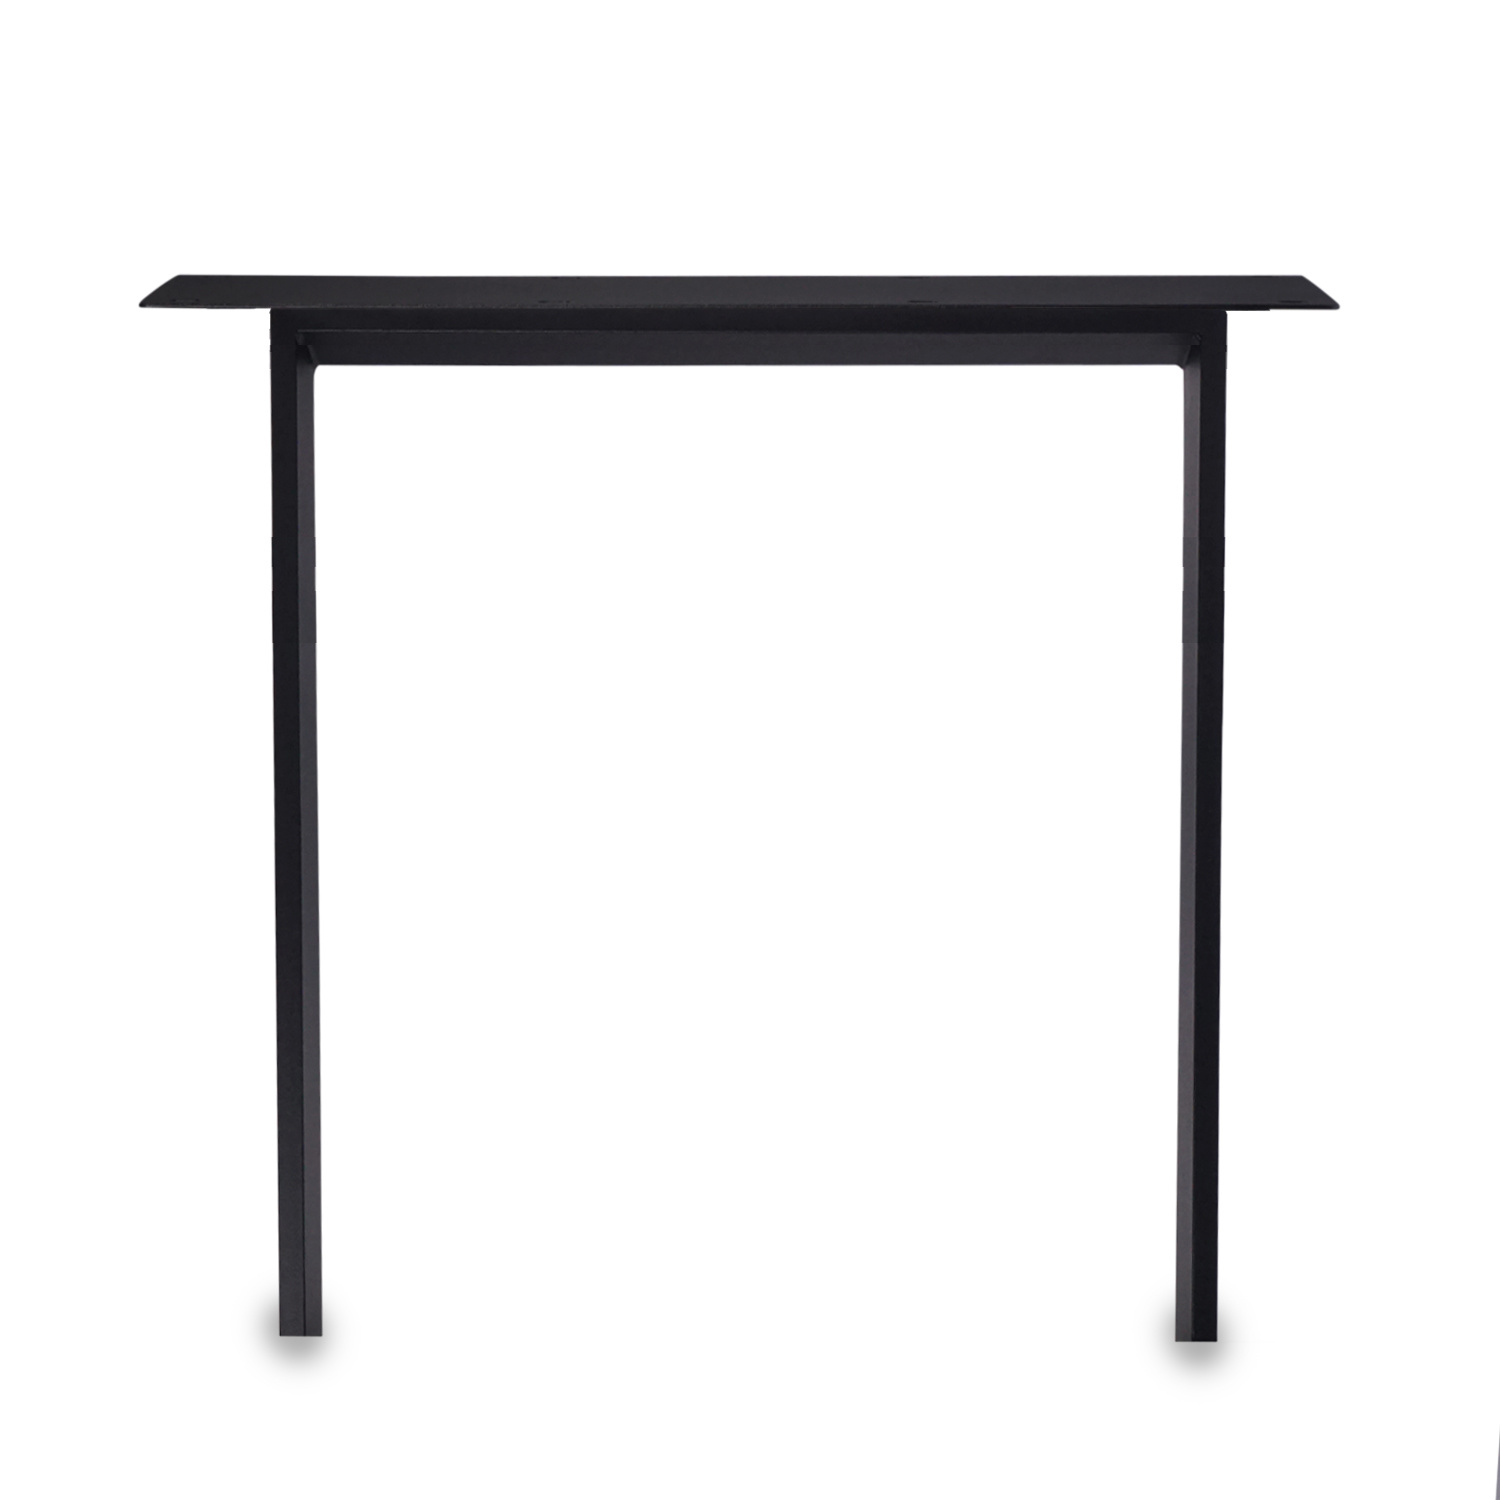  Stalen N-tafelpoten SLANK (SET) 2x10 cm - 67 cm breed - 72 cm hoog - N-poot GEPOEDERCOAT zwart